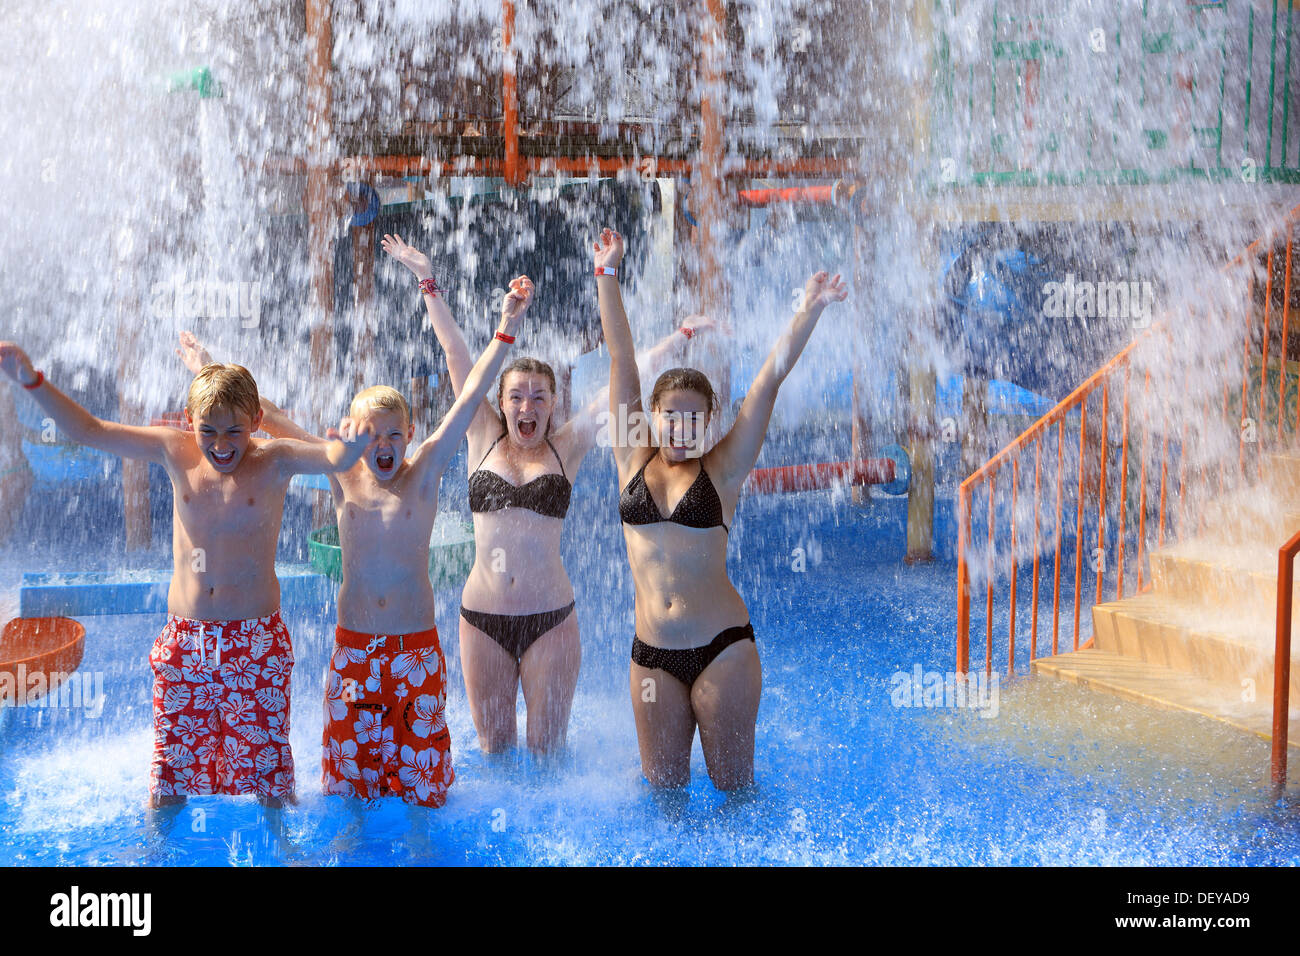 Los jóvenes disfrutando el agua cayendo sobre ellos en un Parque Acuático Foto de stock